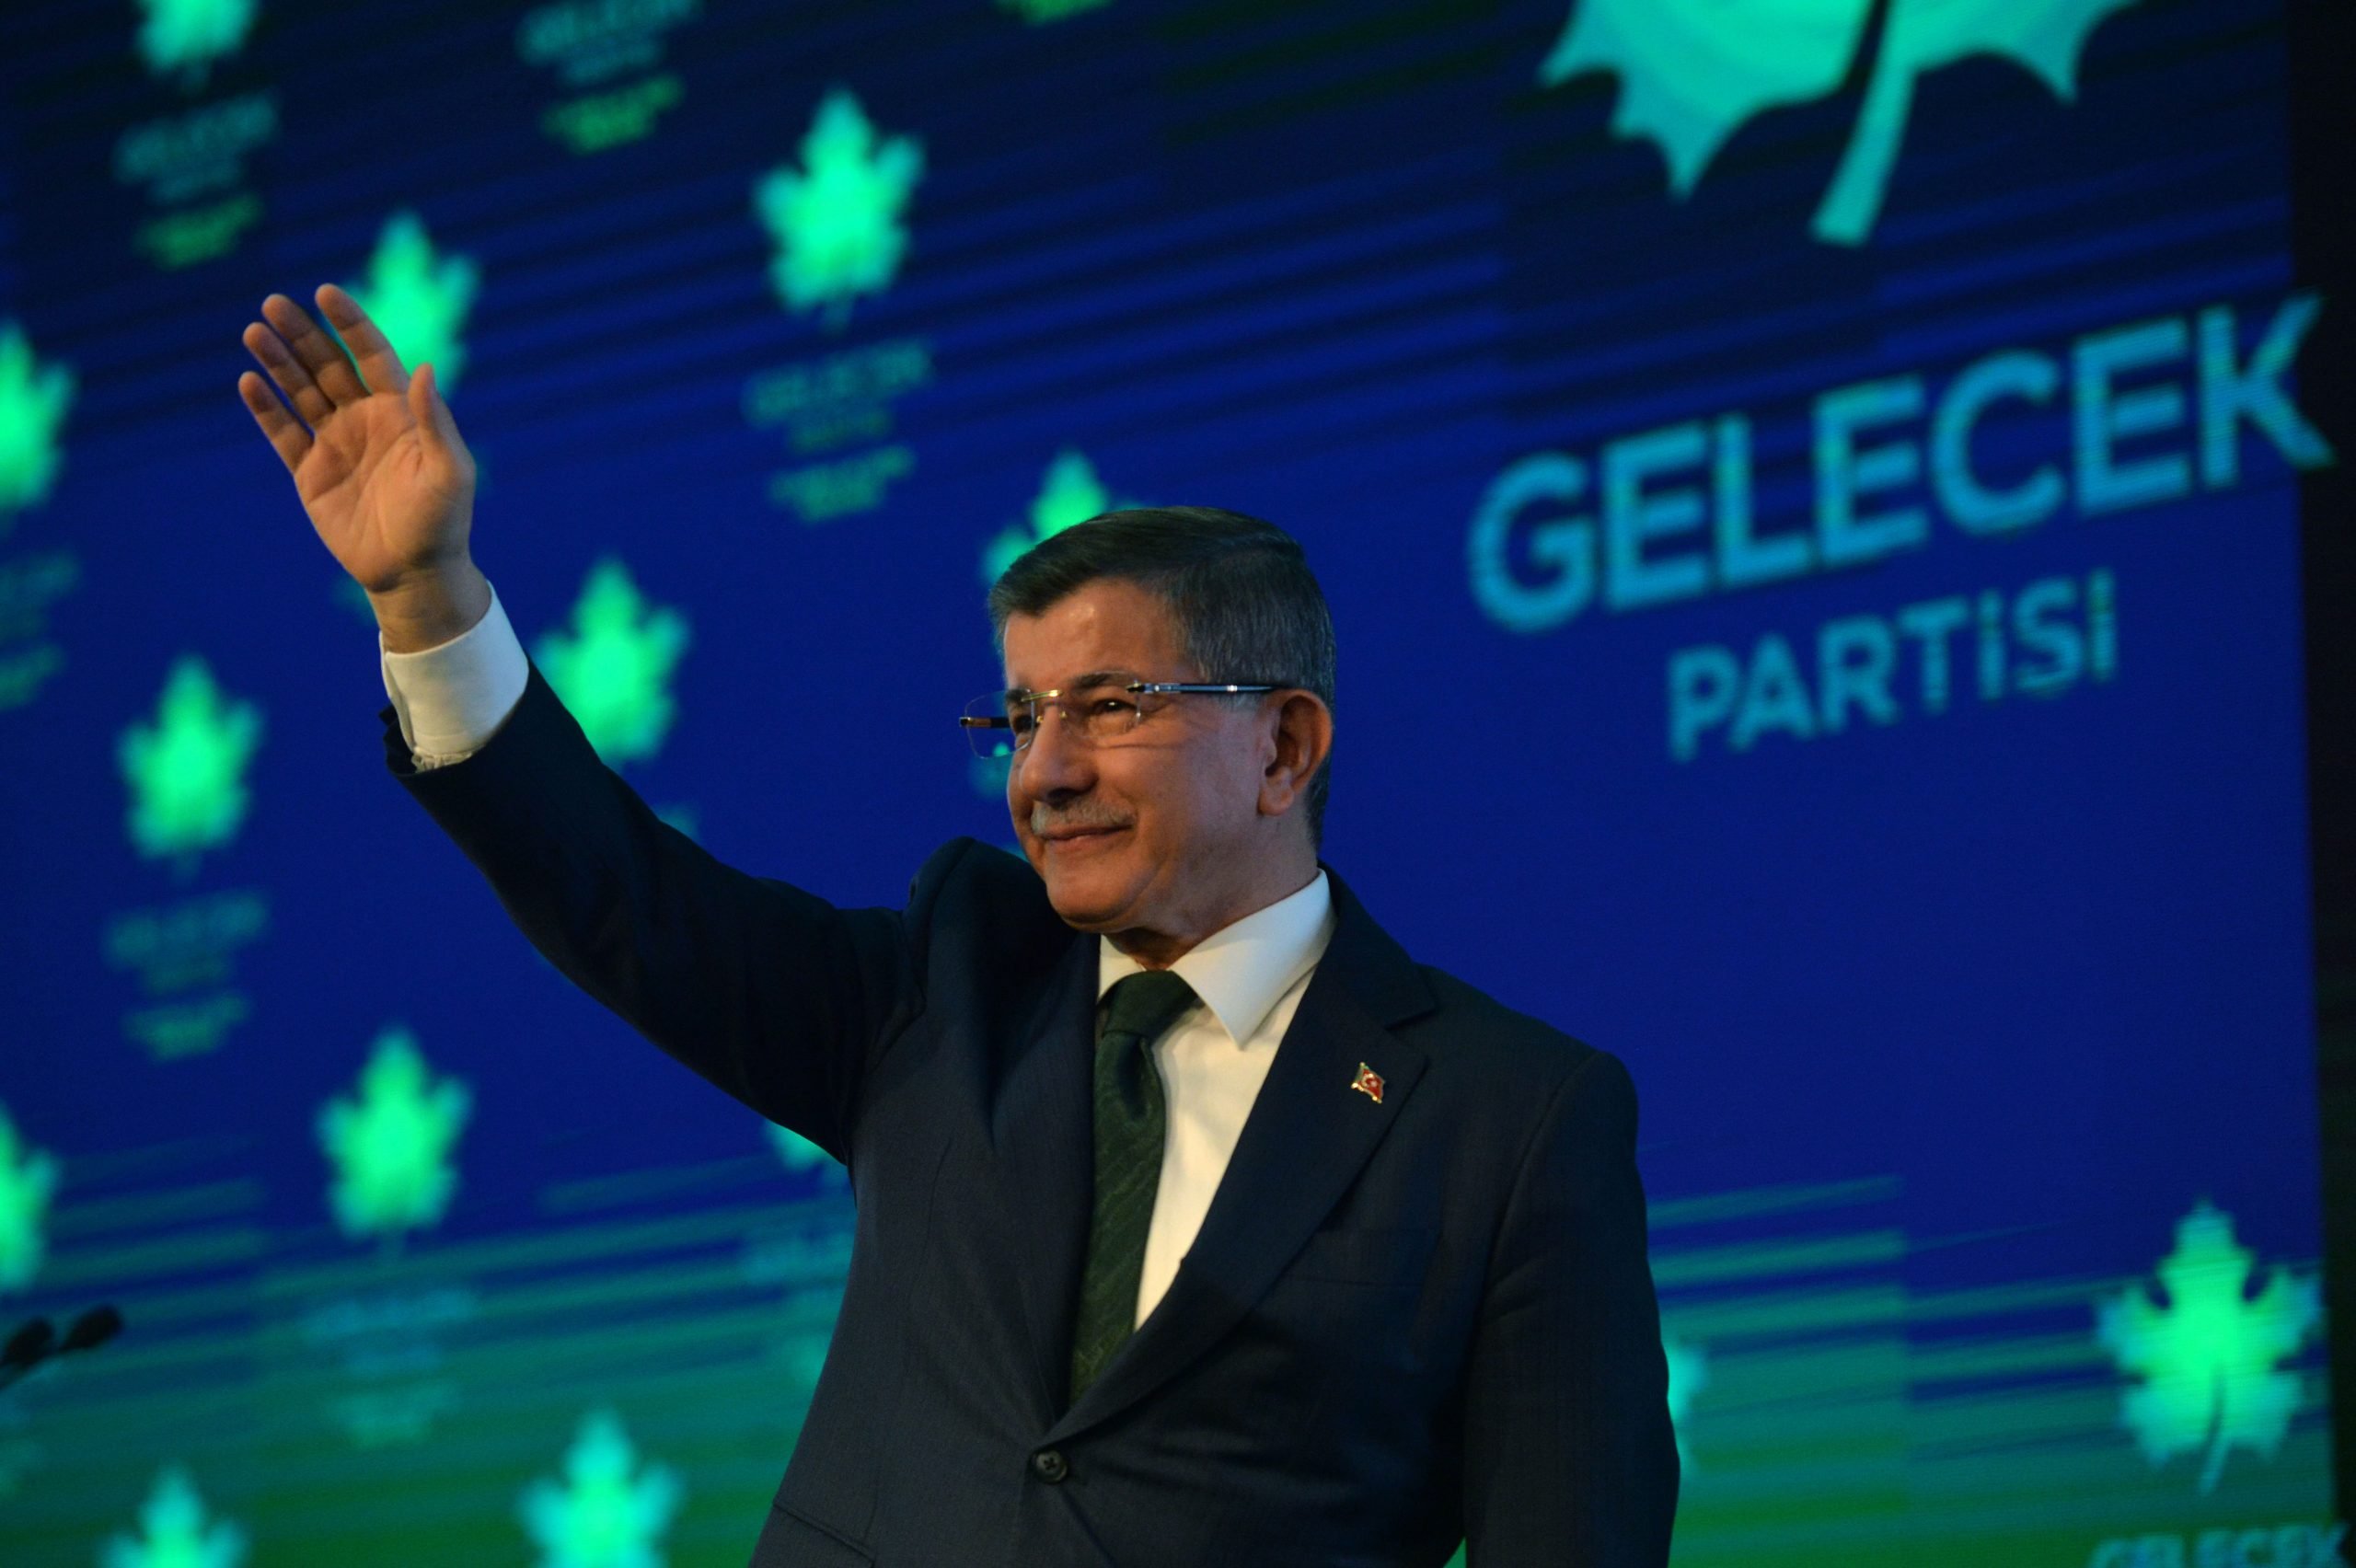 Έπεσε… θάψιμο από Νταβούτογλου στον Ερντογάν στην παρουσίαση του Gelecek Partisi